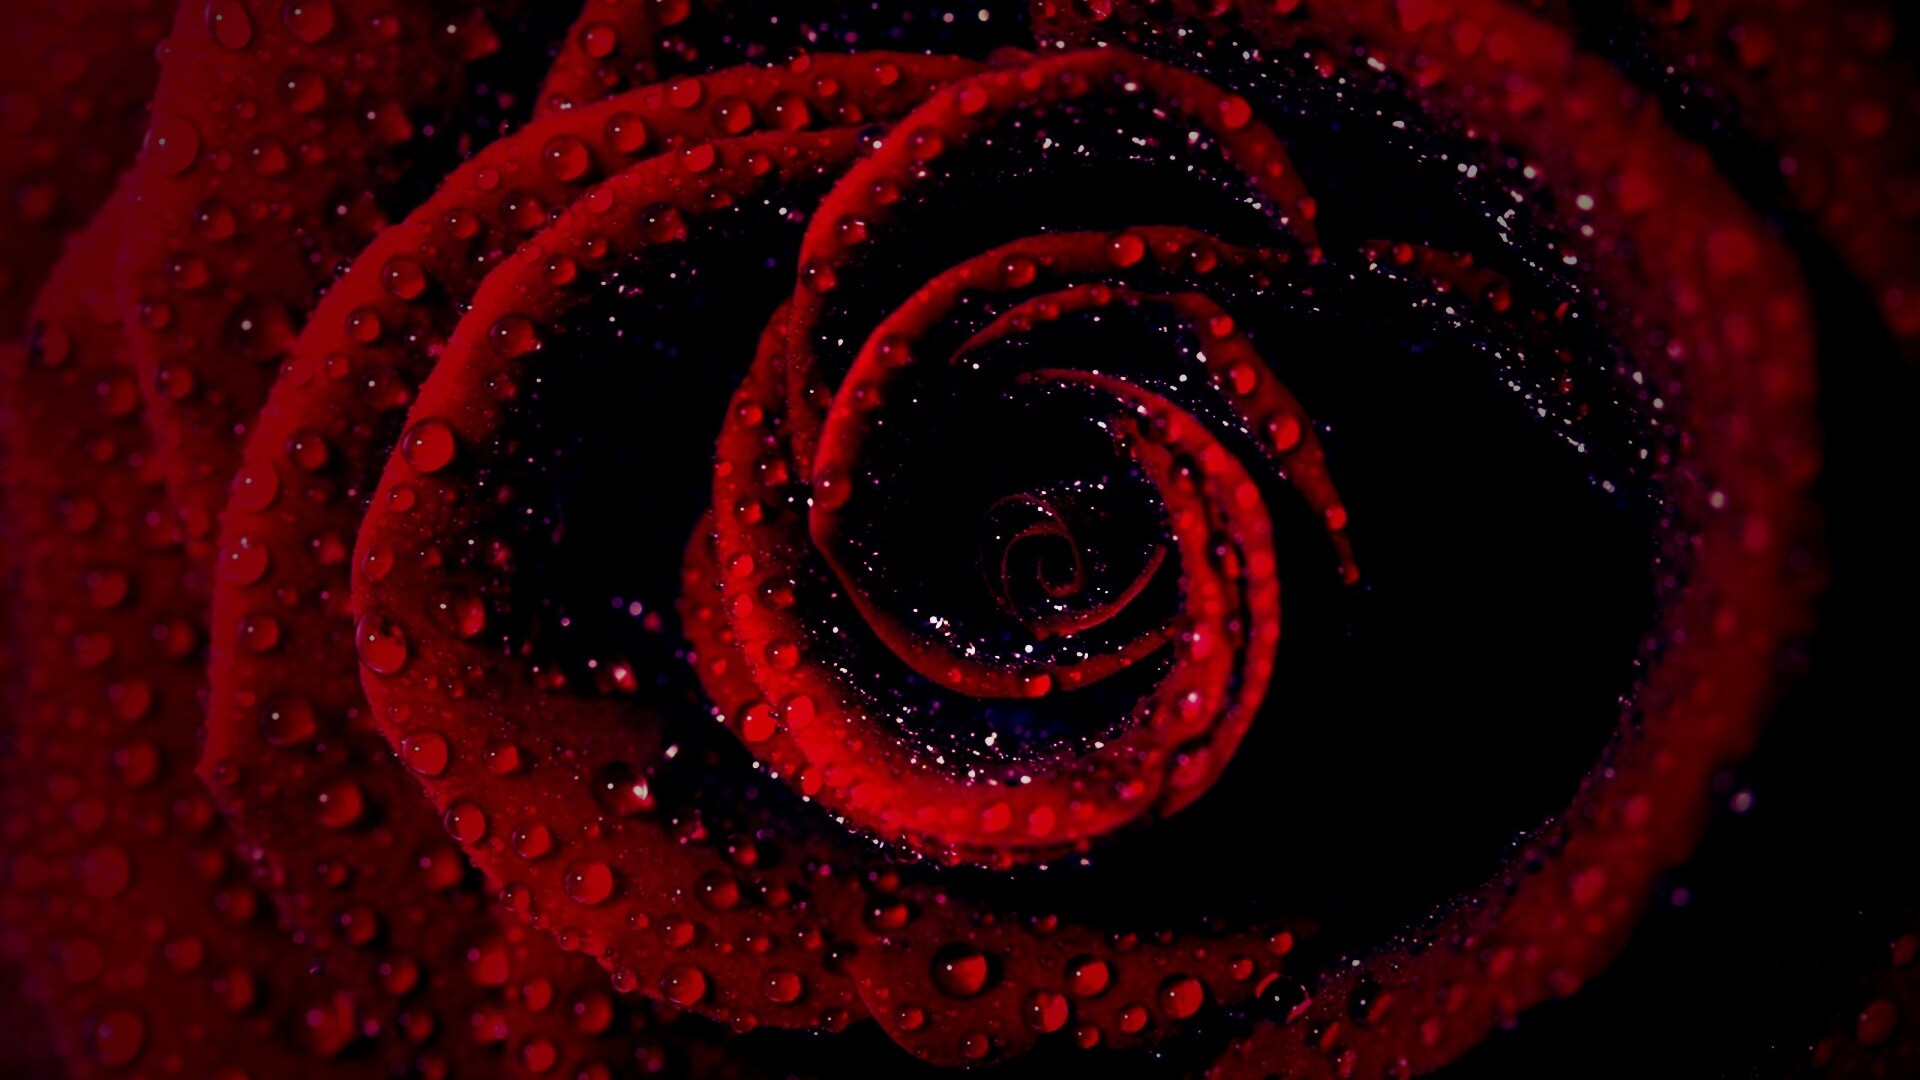 Красная роза обои